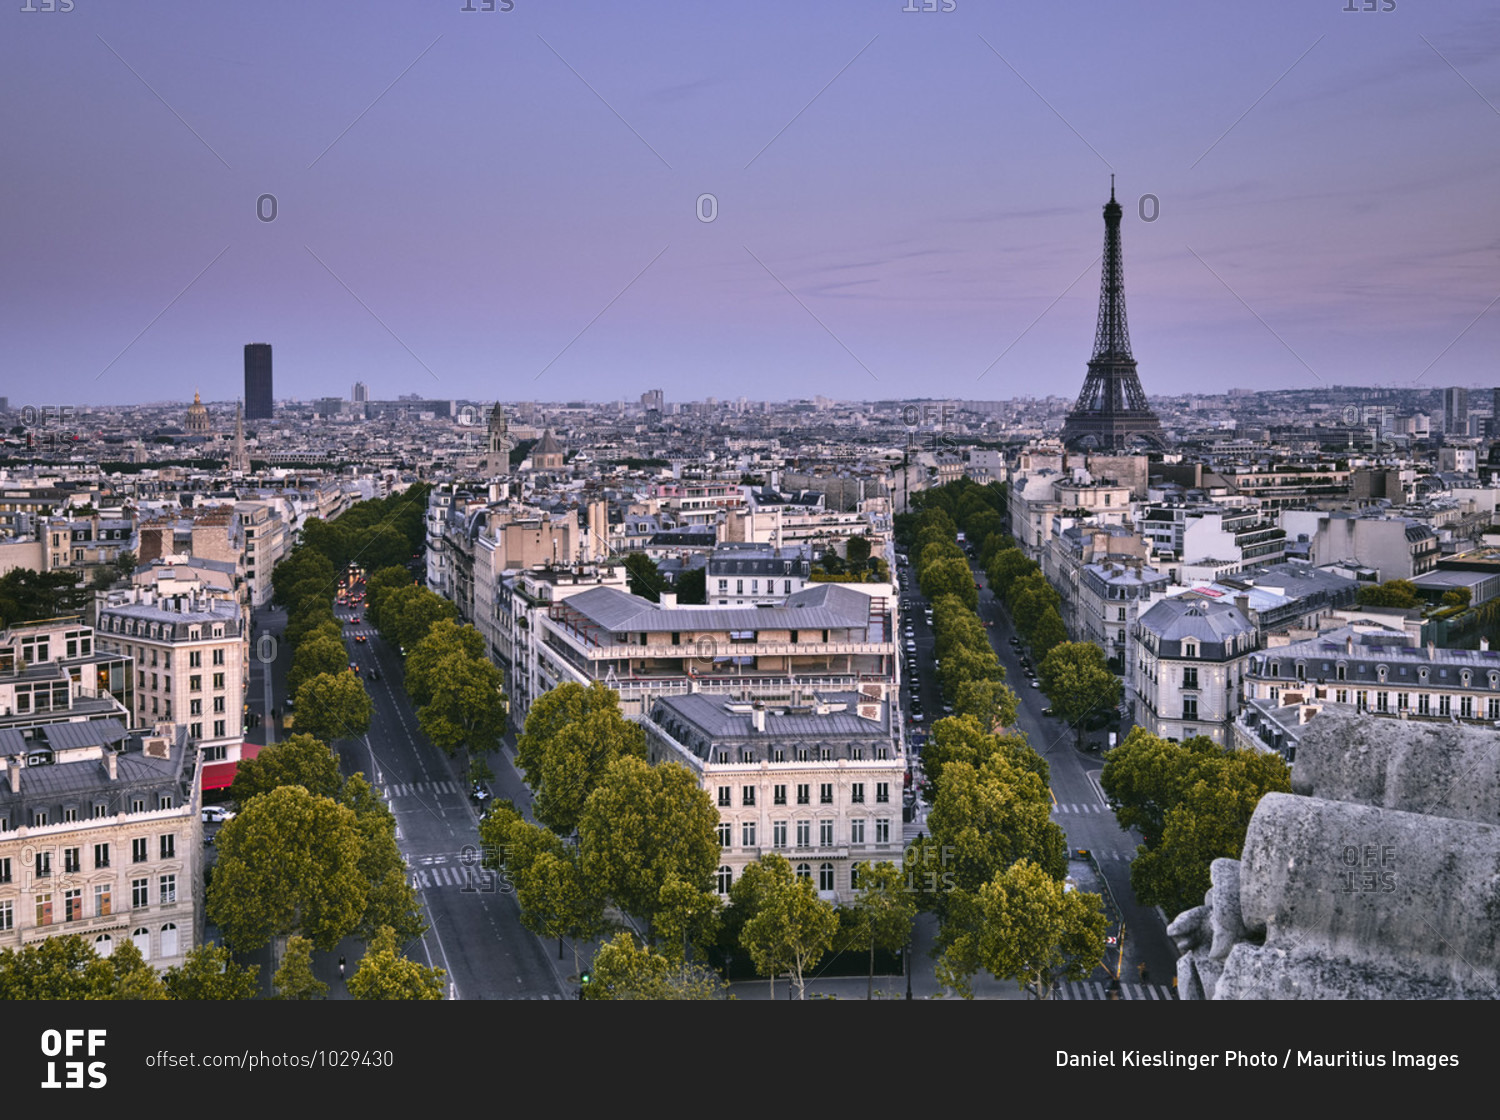 Europe, France, Paris, Arc de Triomphe, Place Charles de Gaulle, Champs Elysees,